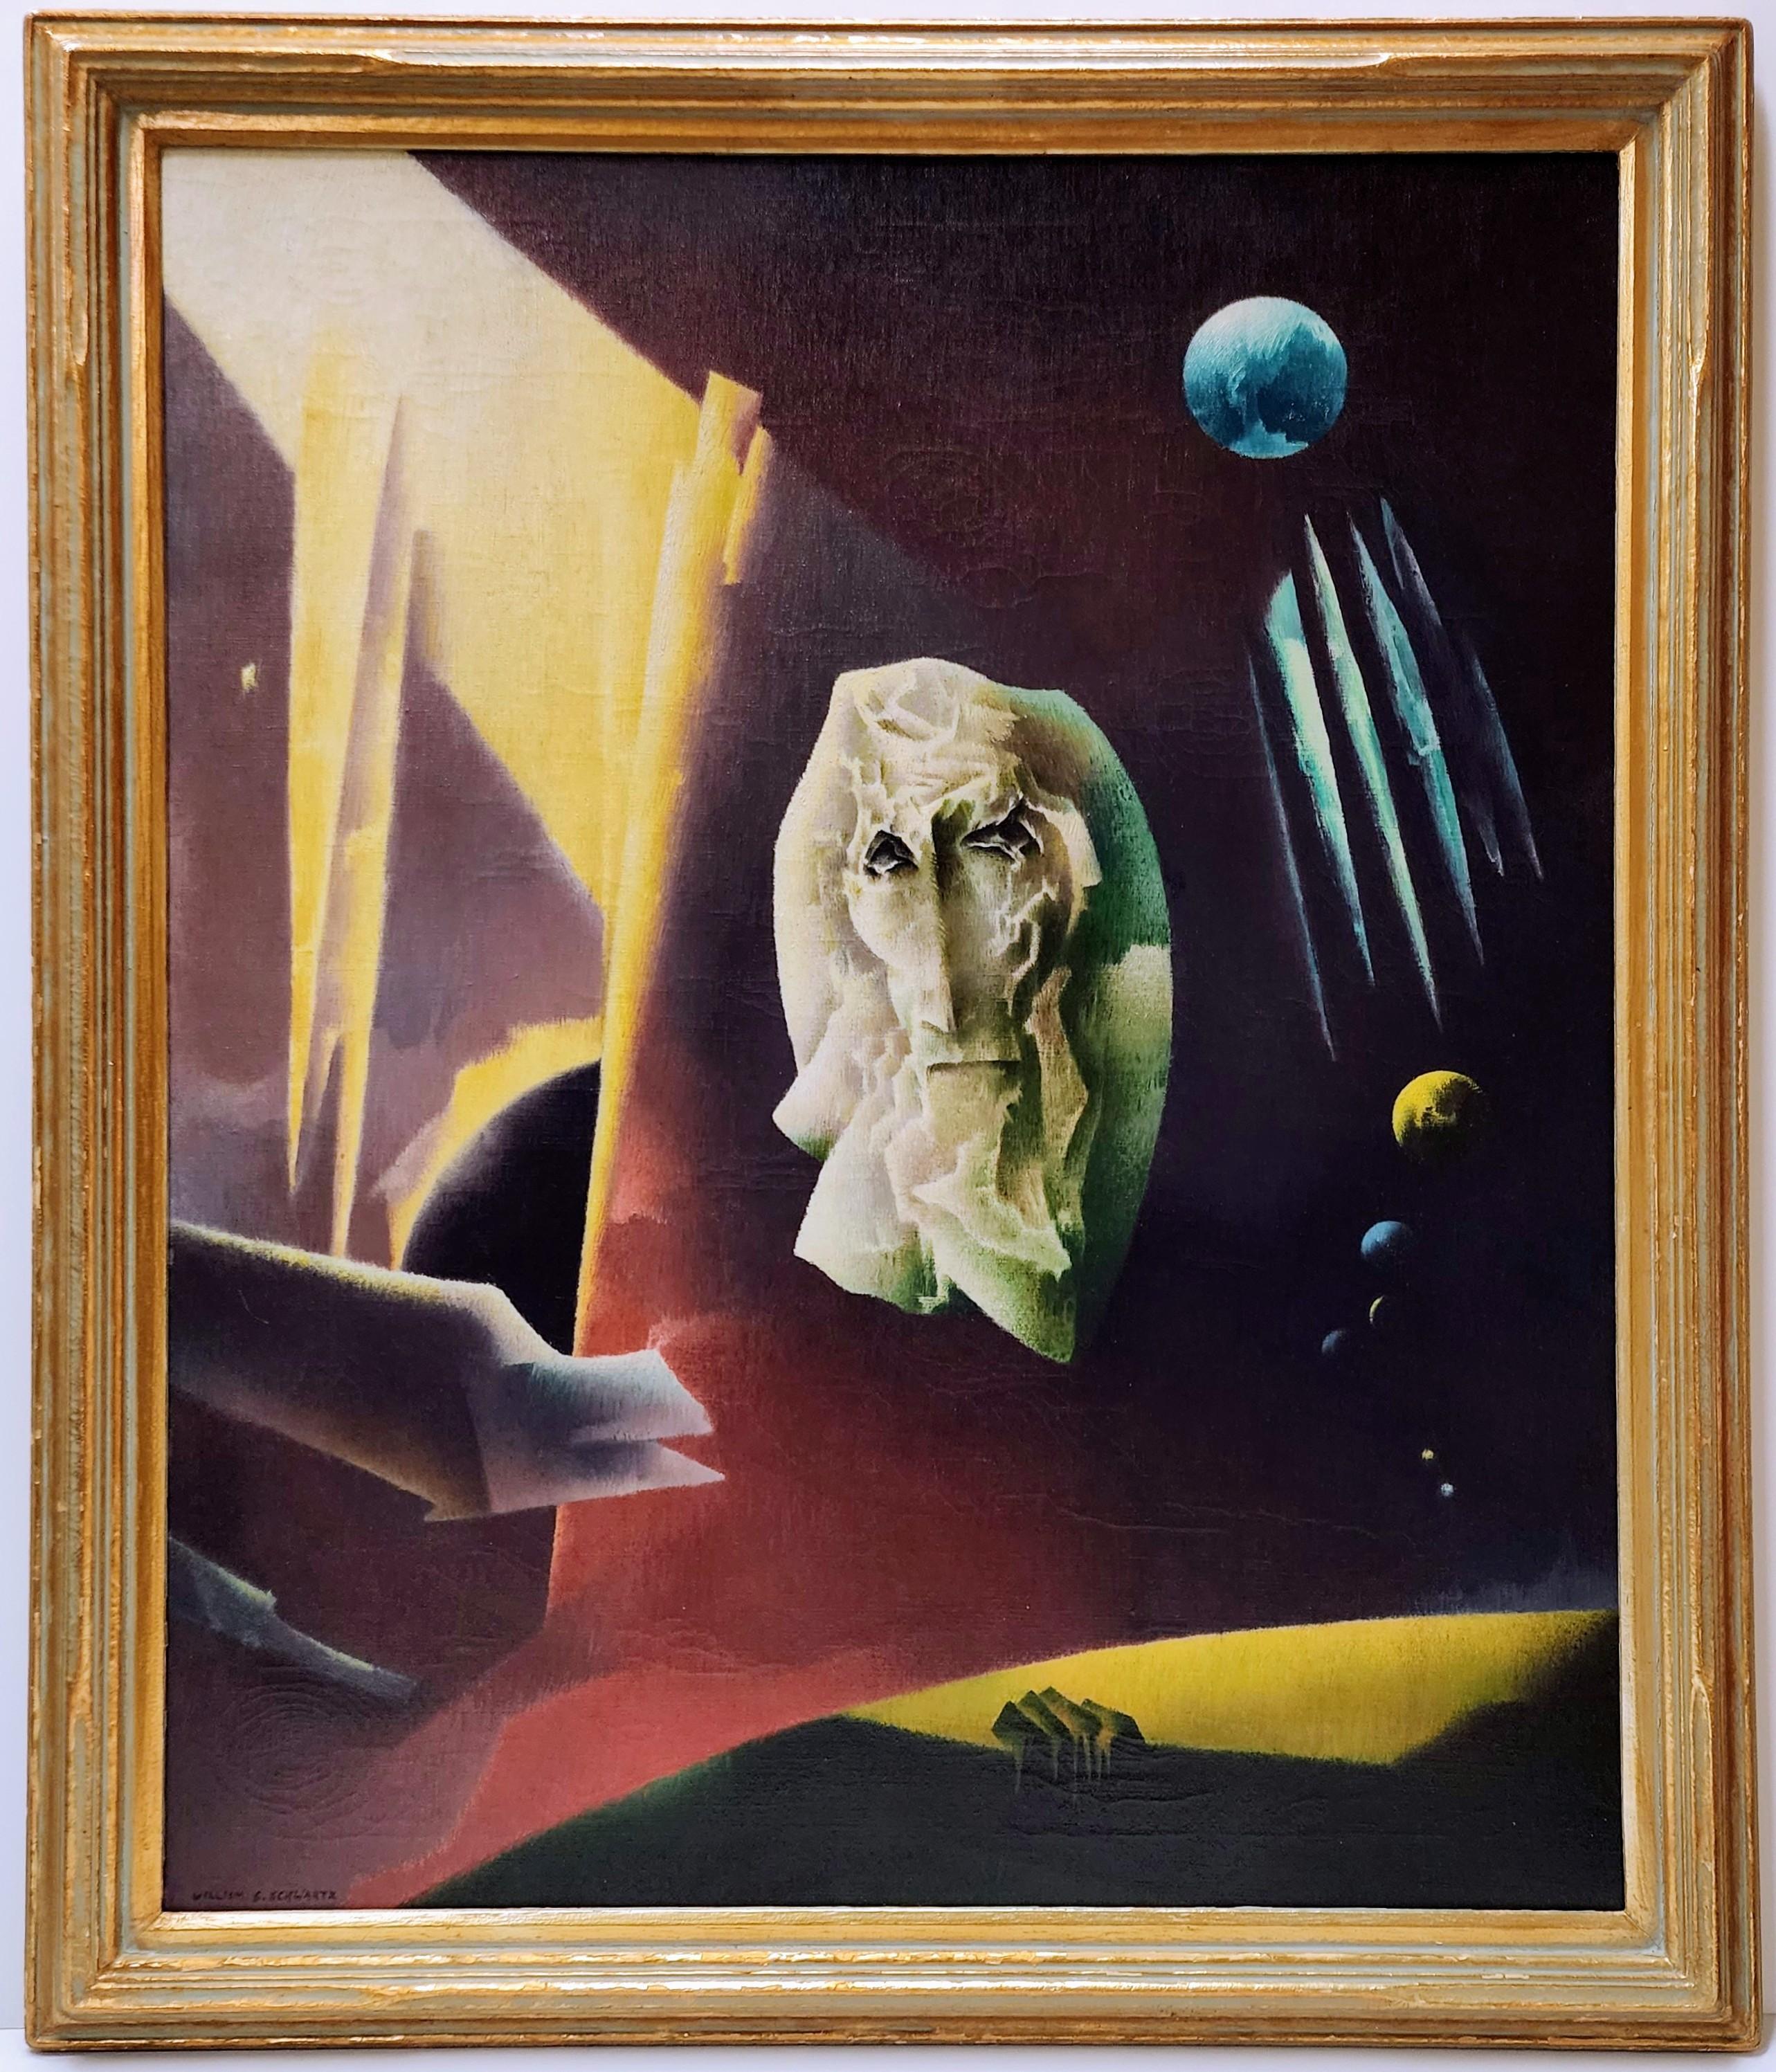 Elements, Surrealism, Chicago Artist, Planets - Painting by William Samuel Schwartz